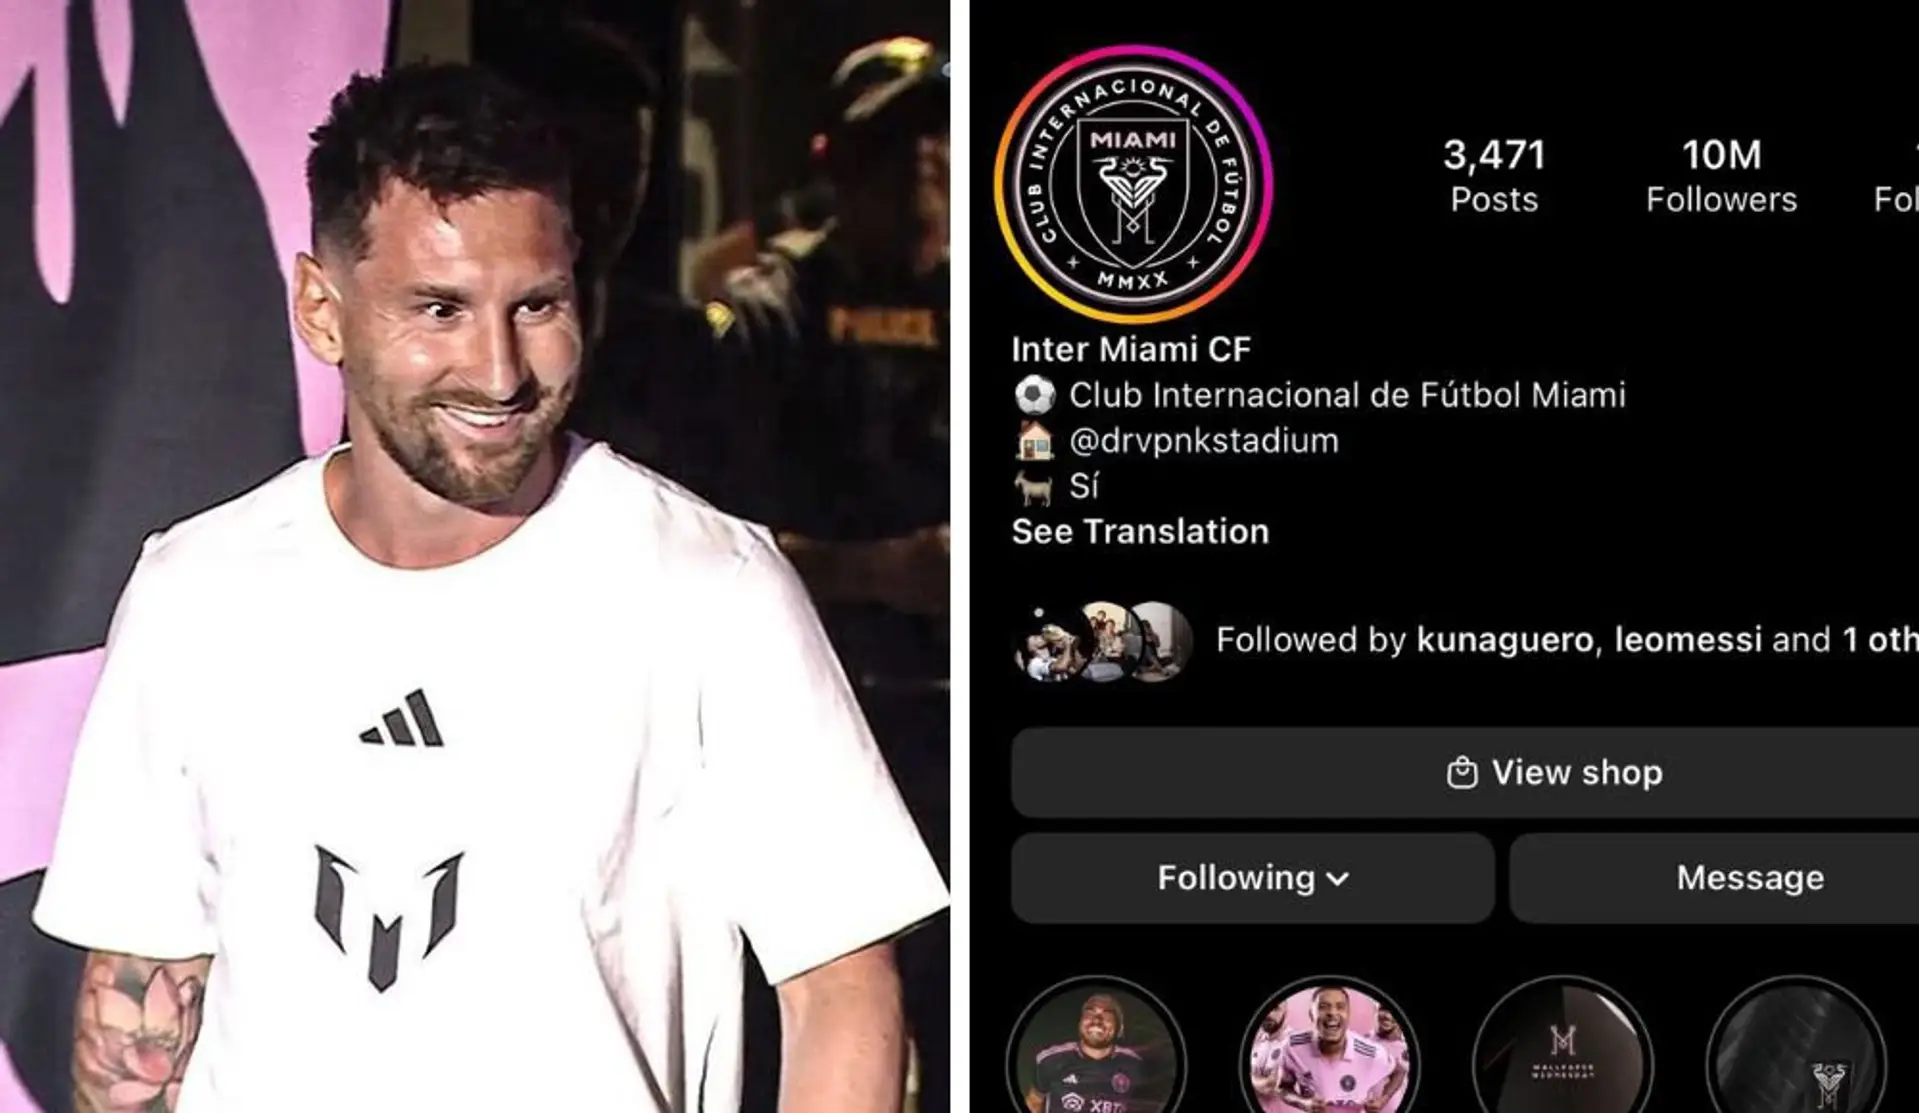 Messi-Fans in Massenwanderung. Miami-Account knackt die Marke von 10 Millionen Follower ⏫💥